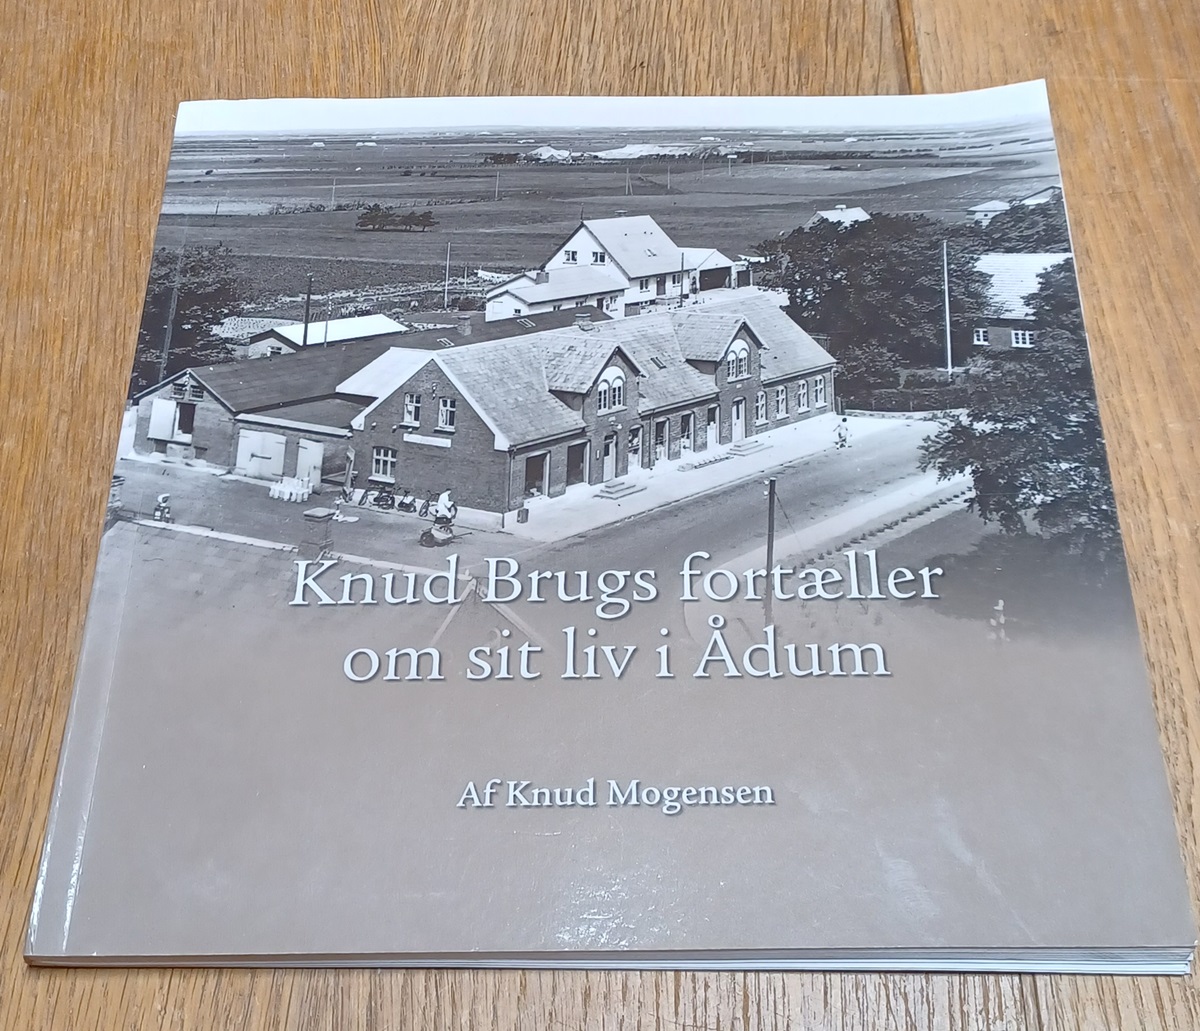 Knud brugs fortæller om sit liv i Ådum